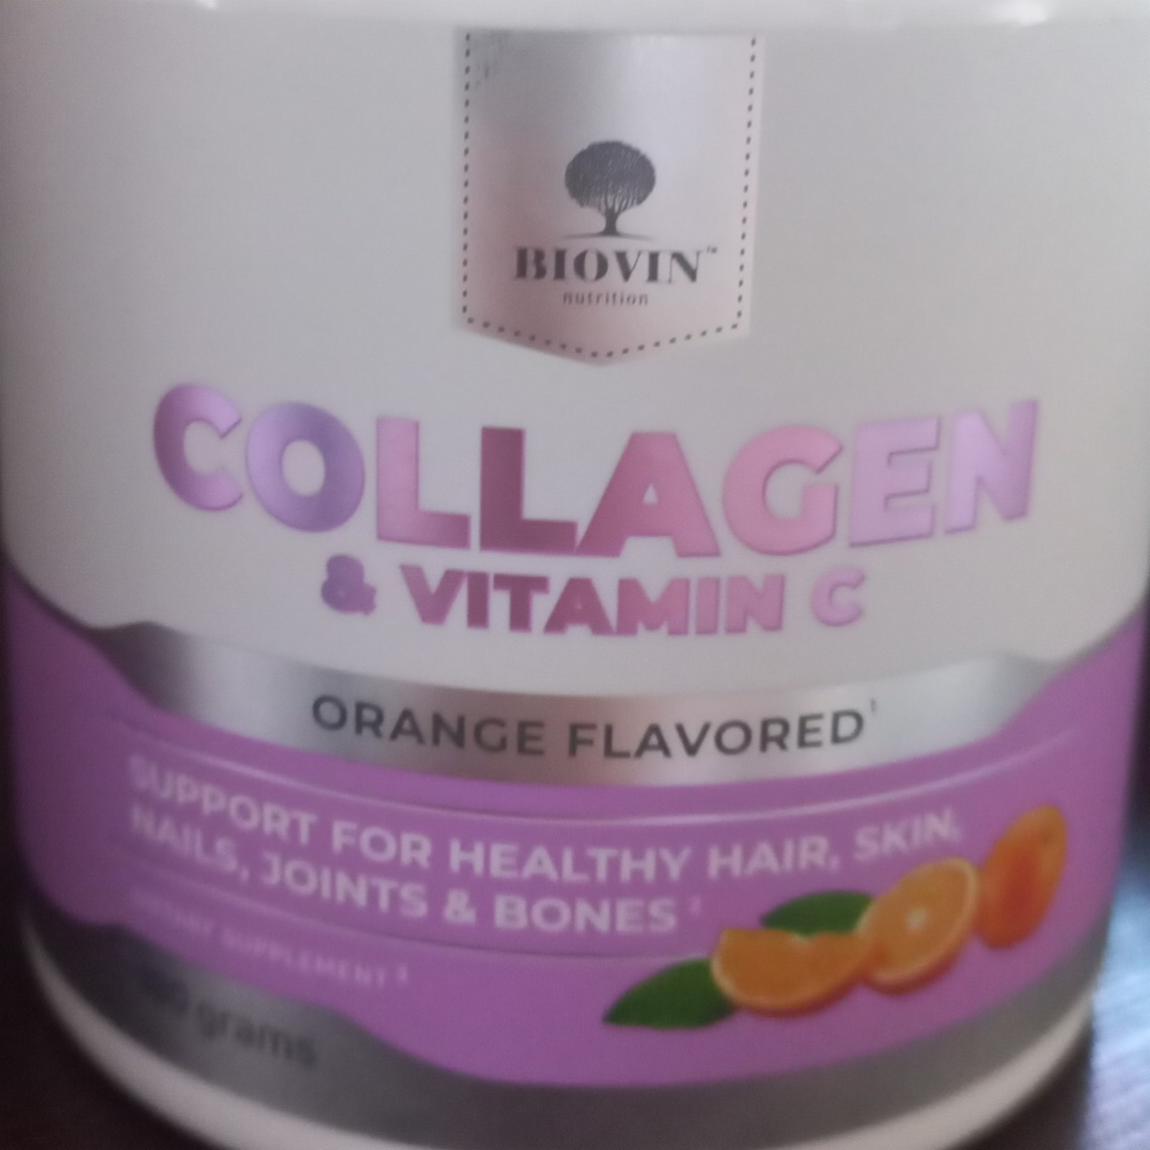 Фото - Коллаген порошок Апельсин, говяжий, витамин с, collagen Collagen&Vitamin C Biovin